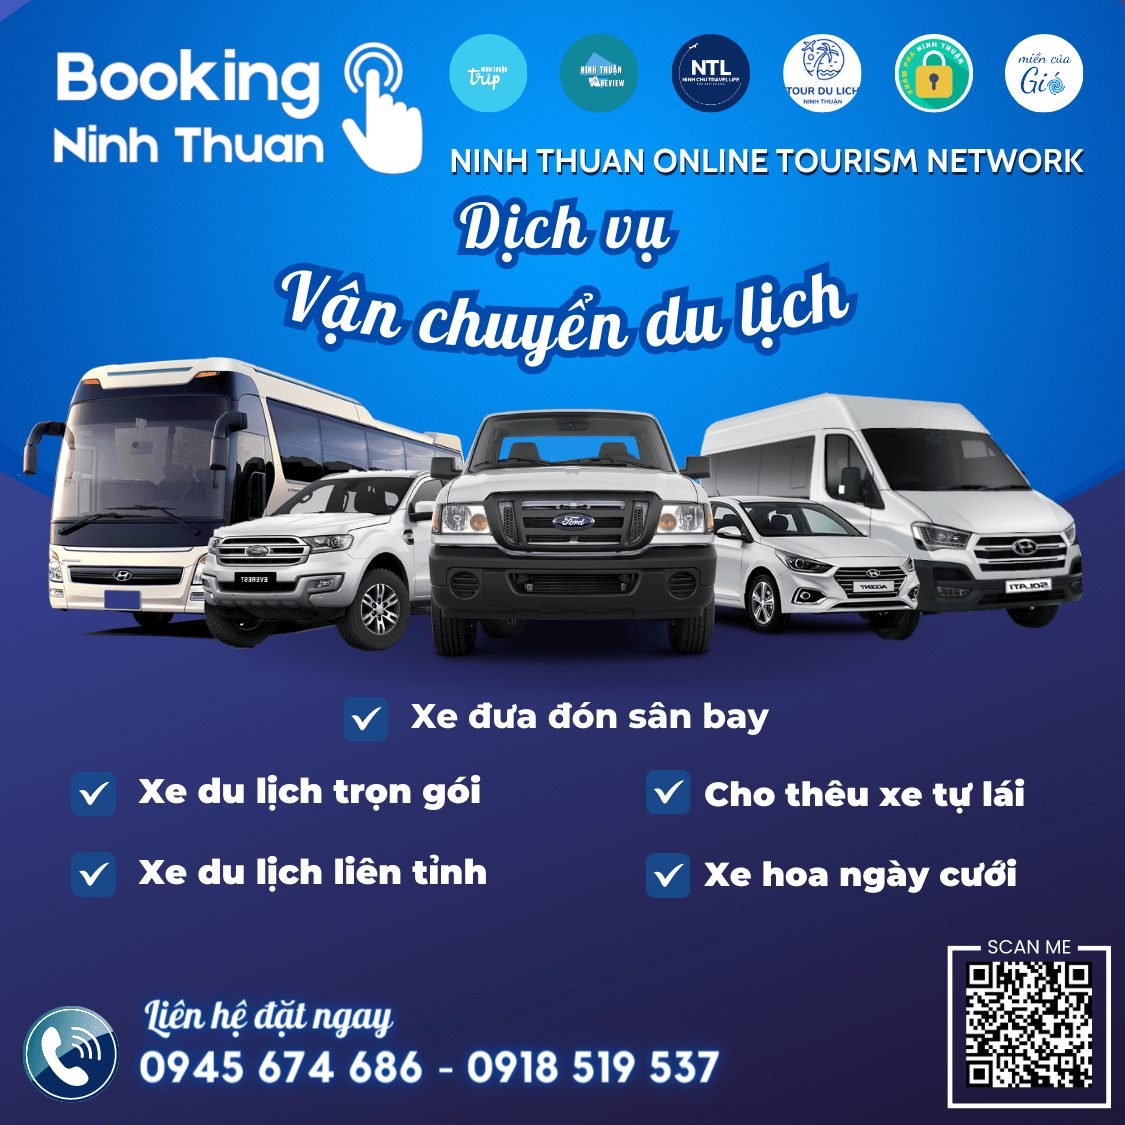 Đặt thuê xe du lịch Ninh Thuận giá tốt nhất tại Tourdulichninhthuan.vn